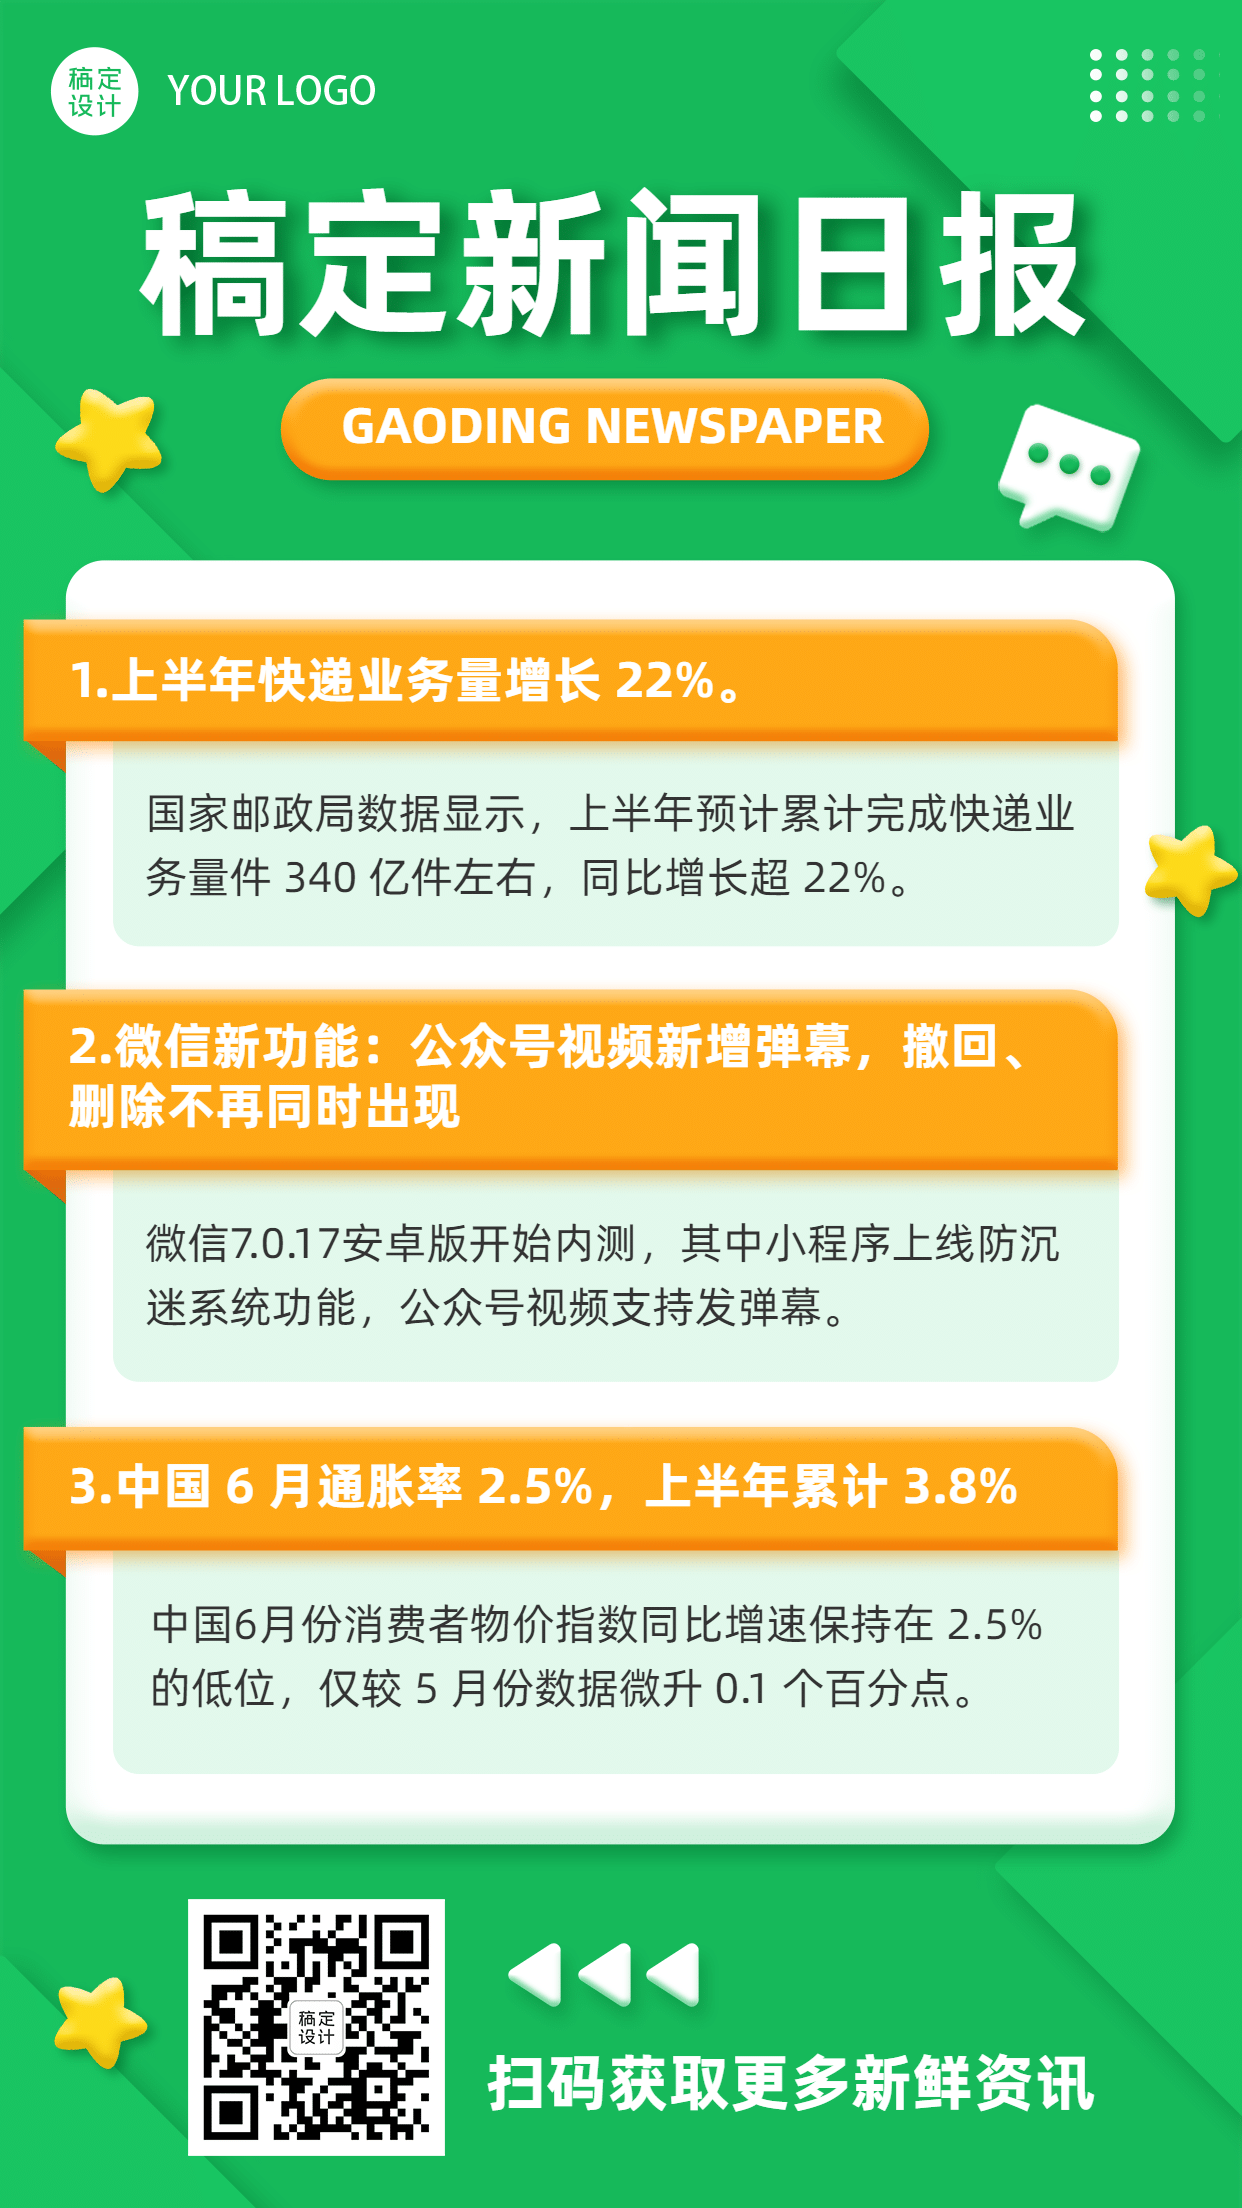 早报日报快讯热点消息3D手机海报预览效果